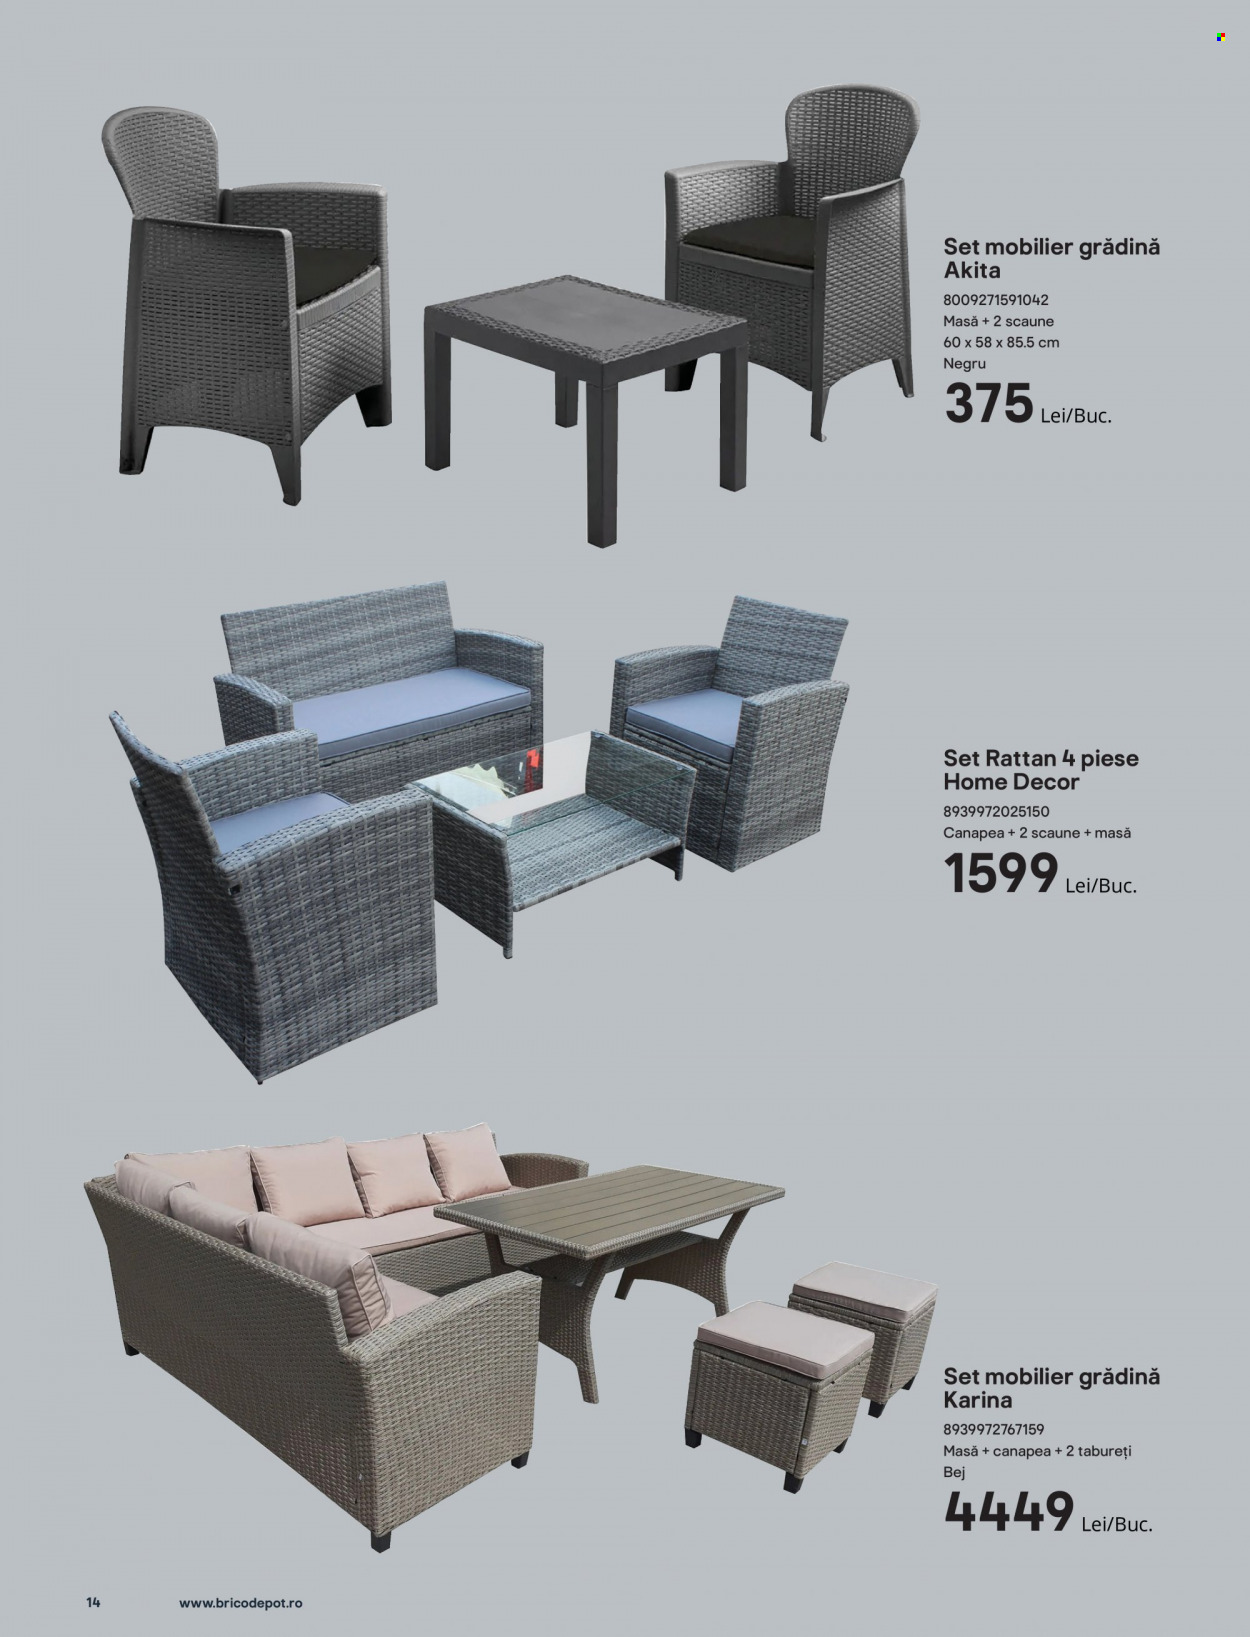 thumbnail - Cataloage Brico Depot - 24.04.2022 - 30.06.2022 - Produse în vânzare - set mobilier, masă, canapea, set mobilier gradina. Pagina 14.